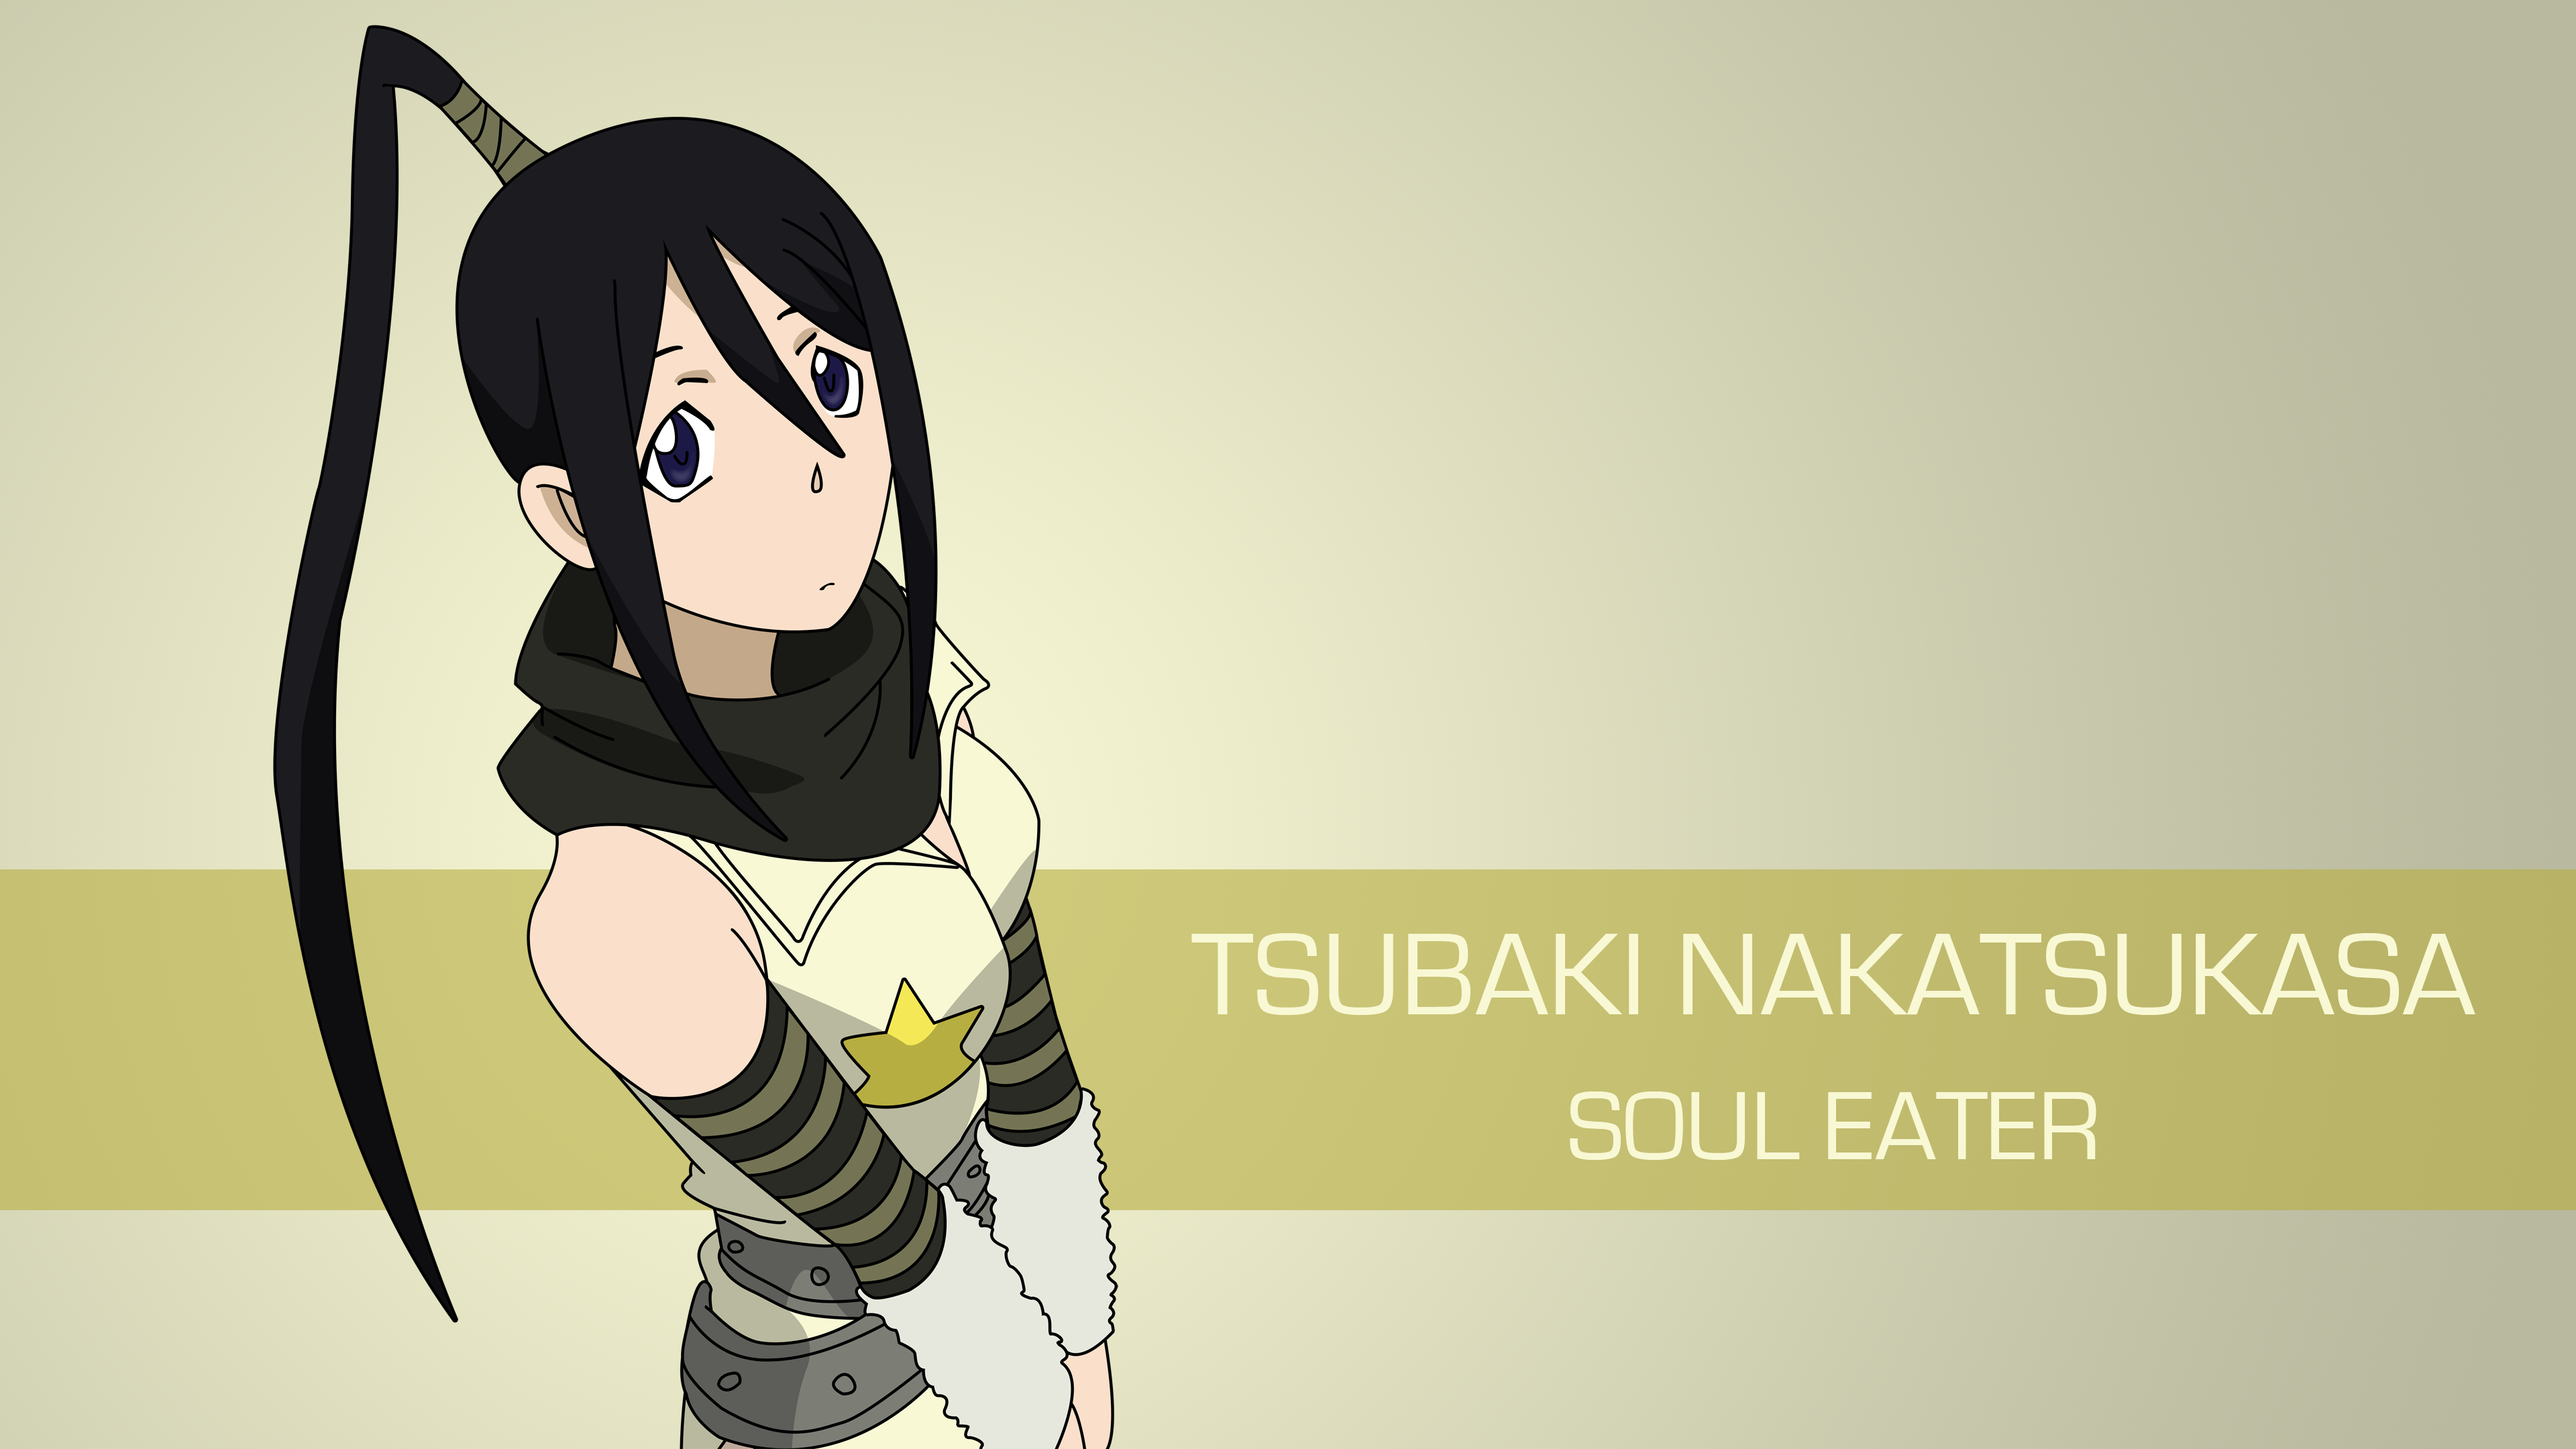 Tsubaki Nakatsukasa Soul Eater 3840x2160